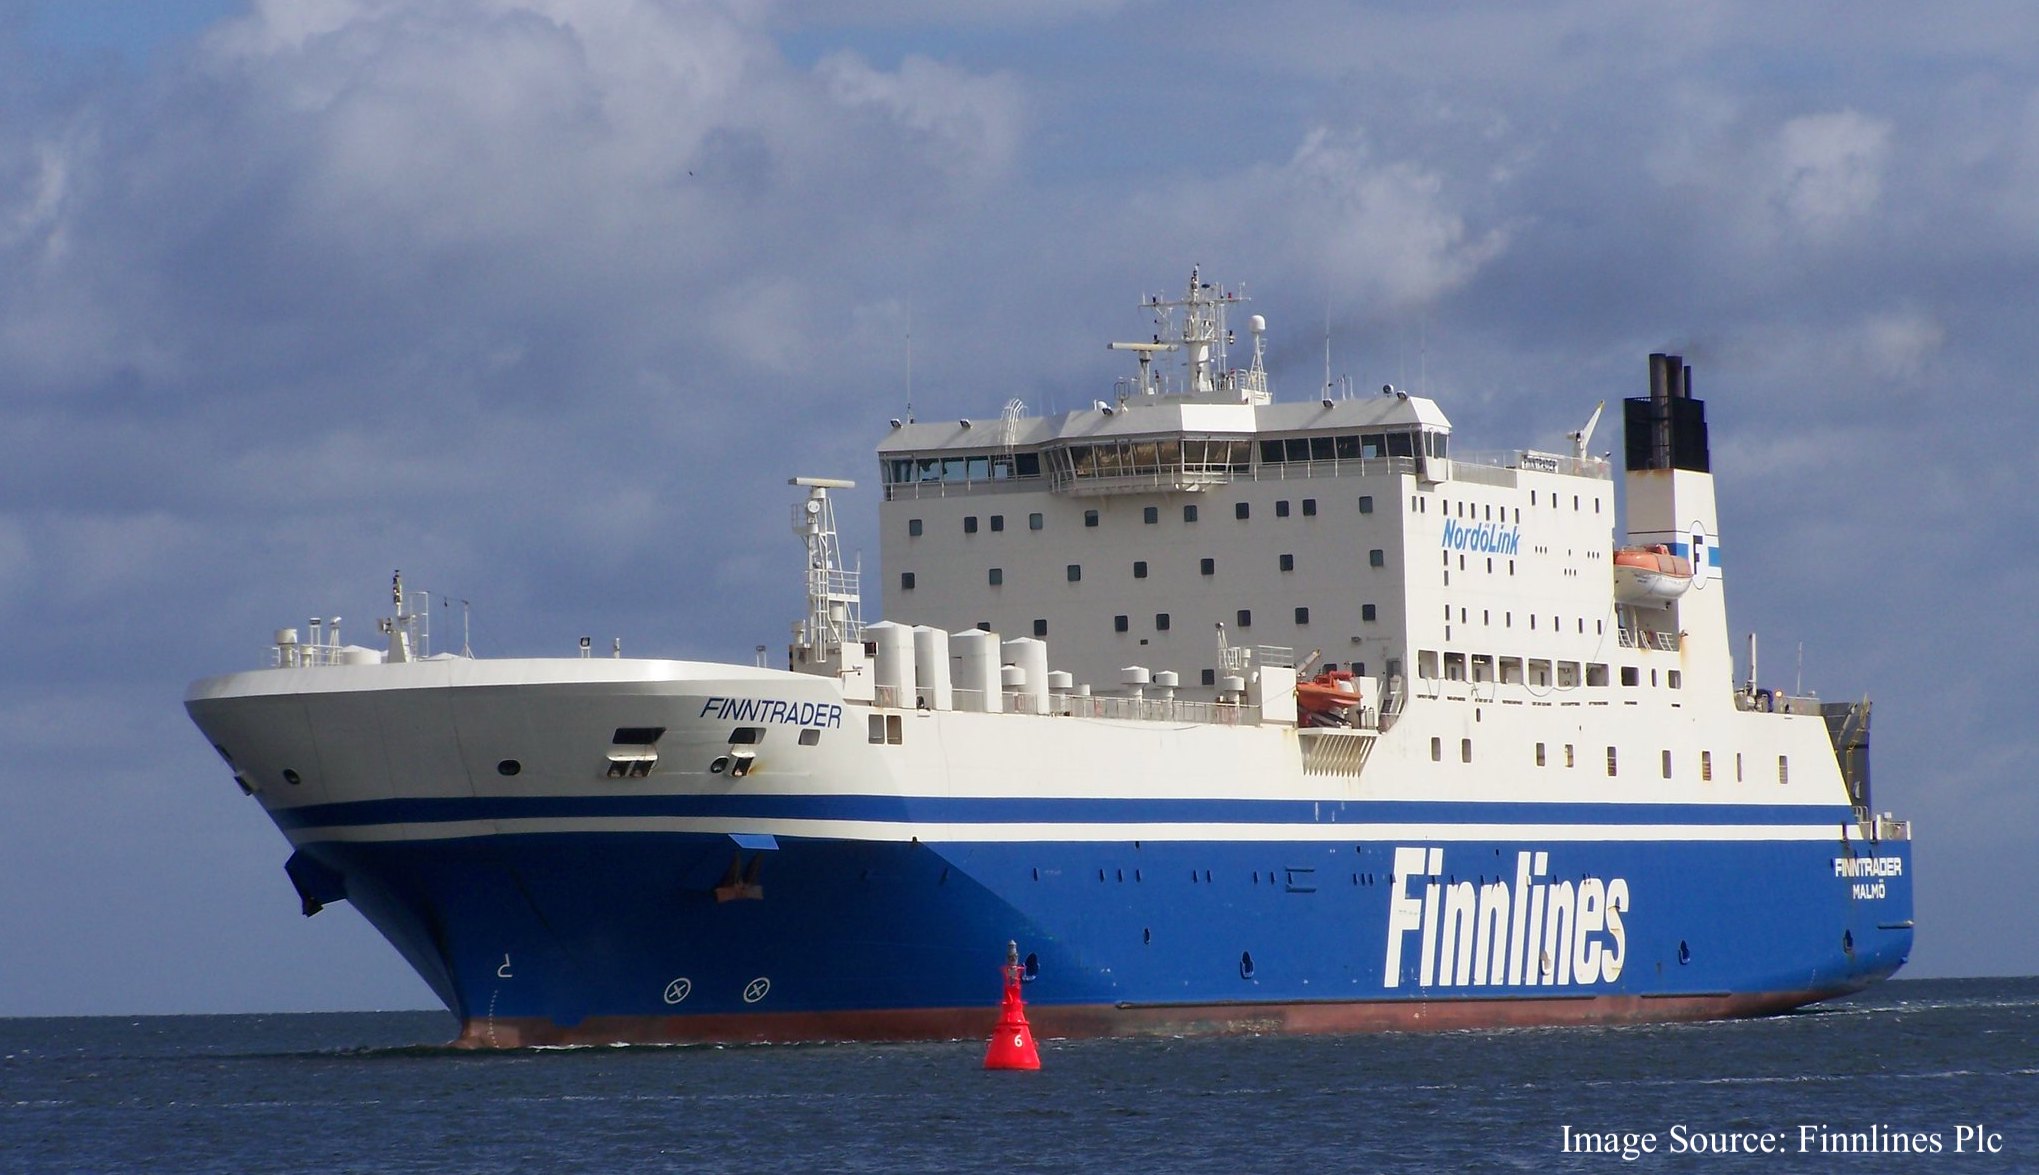 Foto von Finnlines - Finntrader Schiff